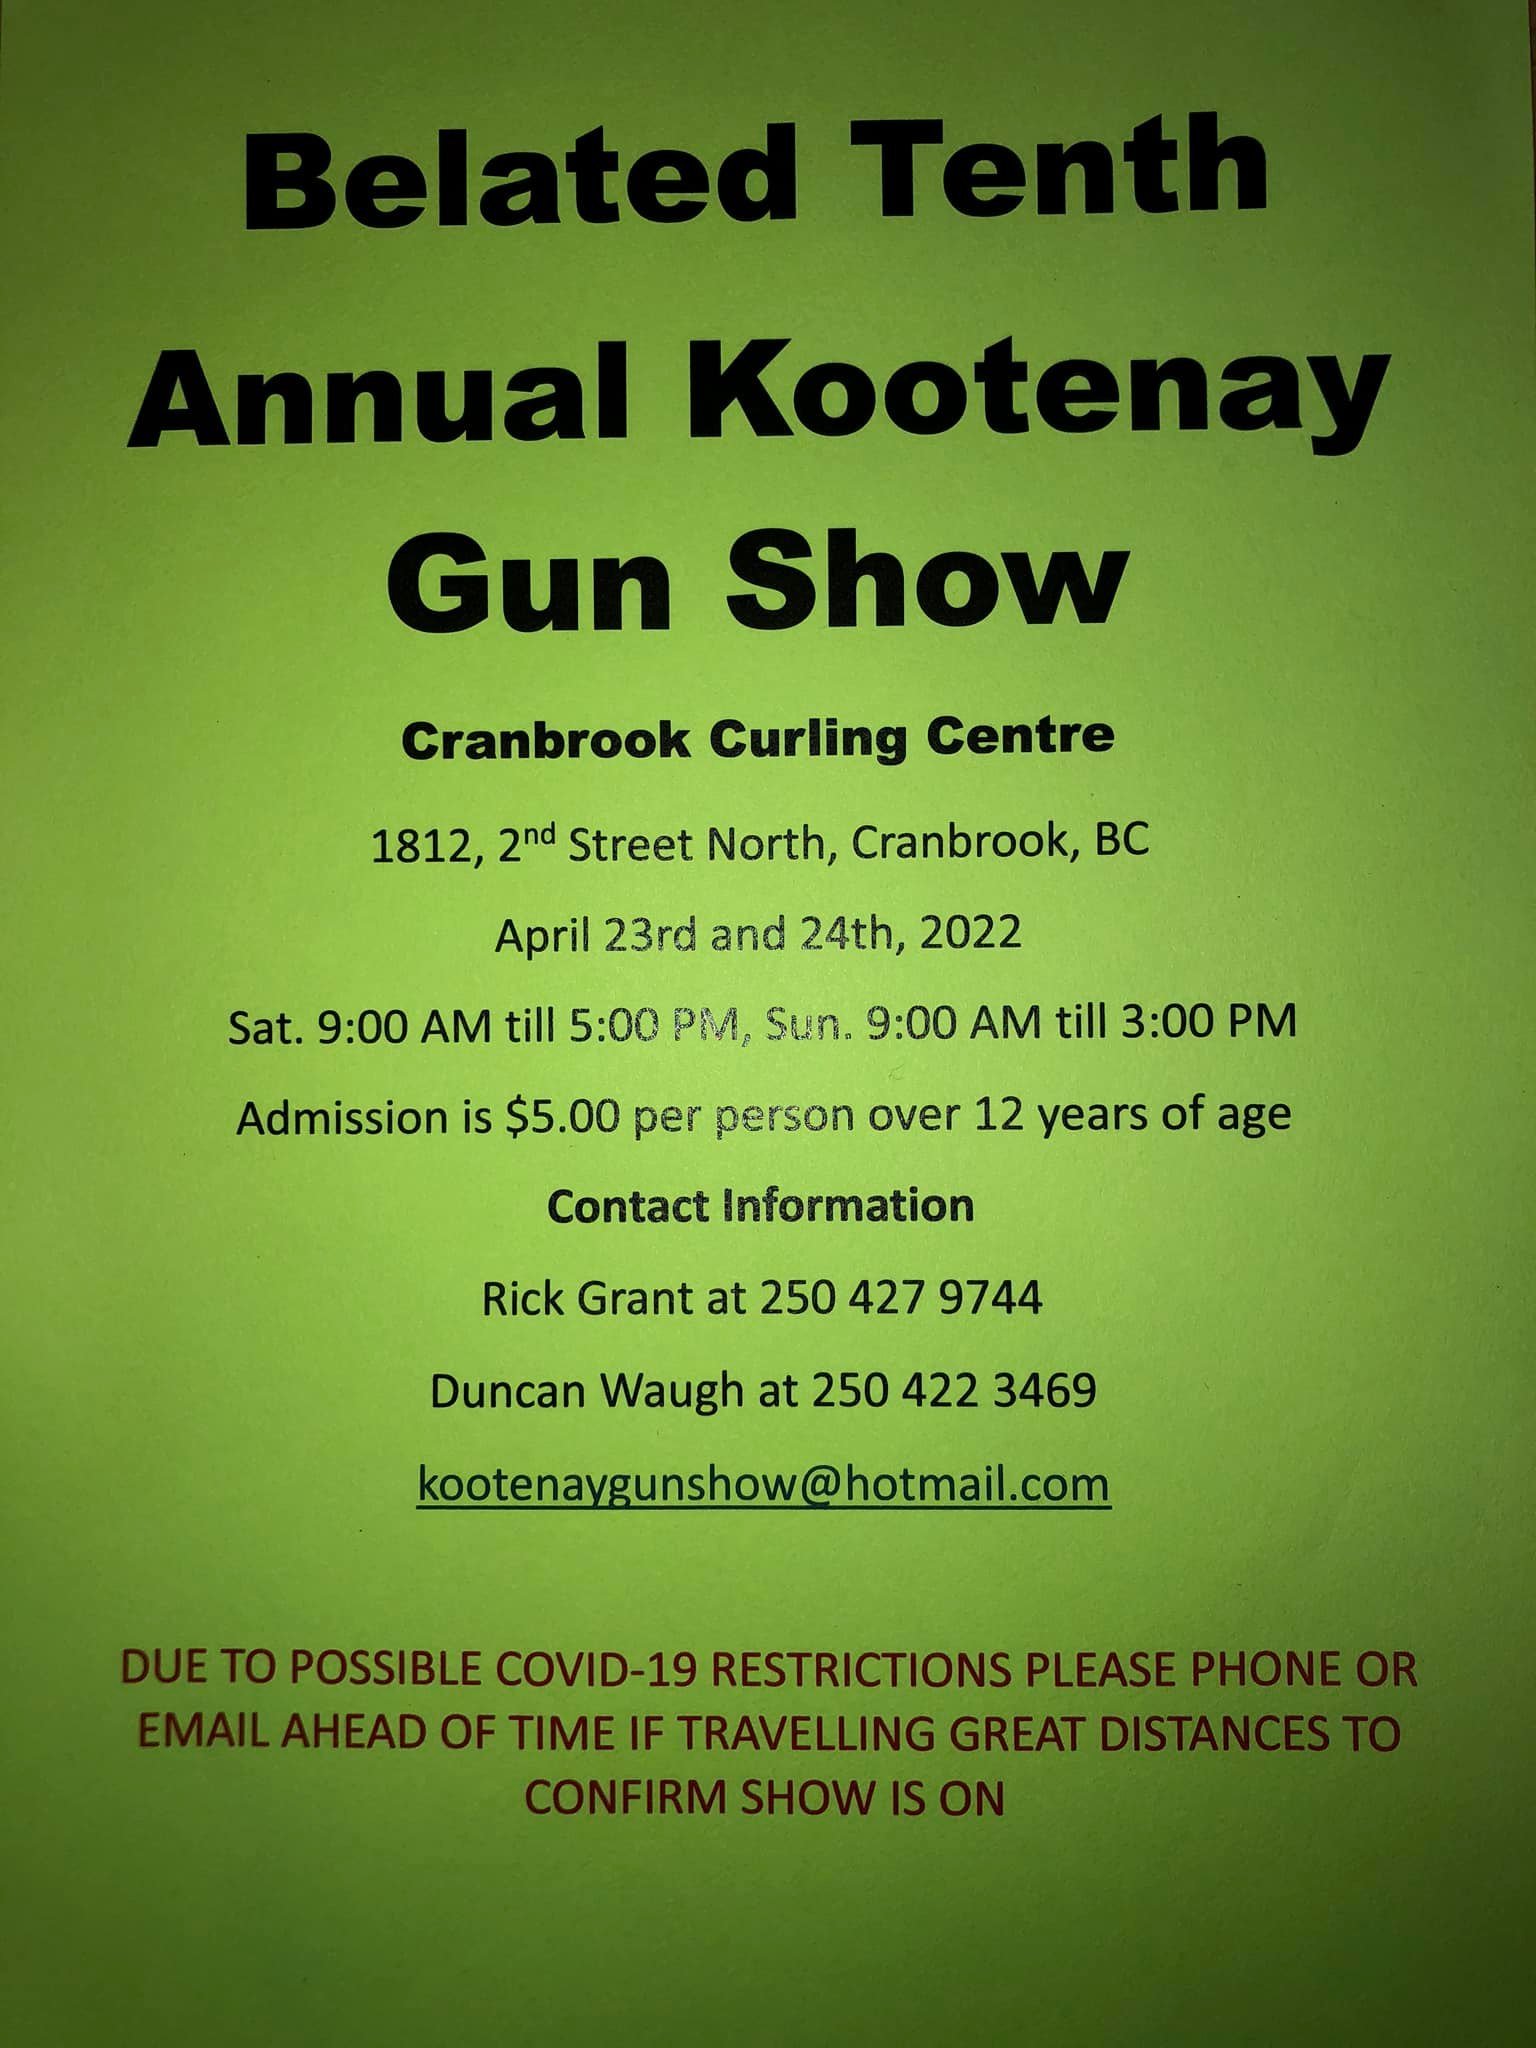 10th Annual Kootenay Gun Show